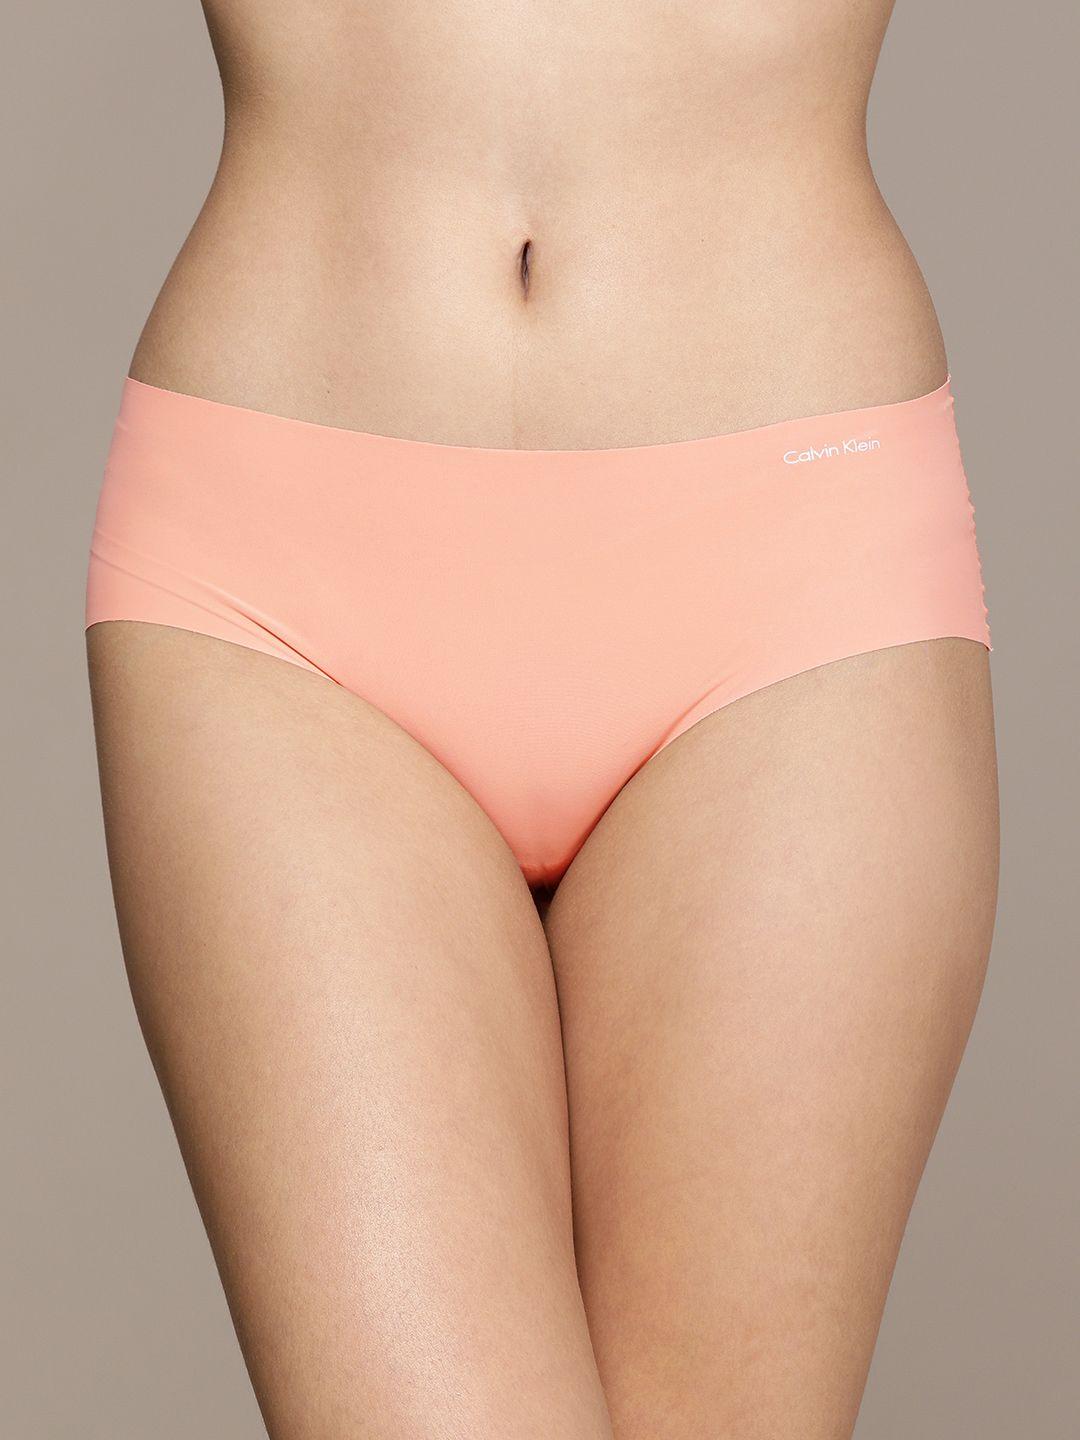 calvin klein underwear women peach-coloured solid hipster briefs d3429tly